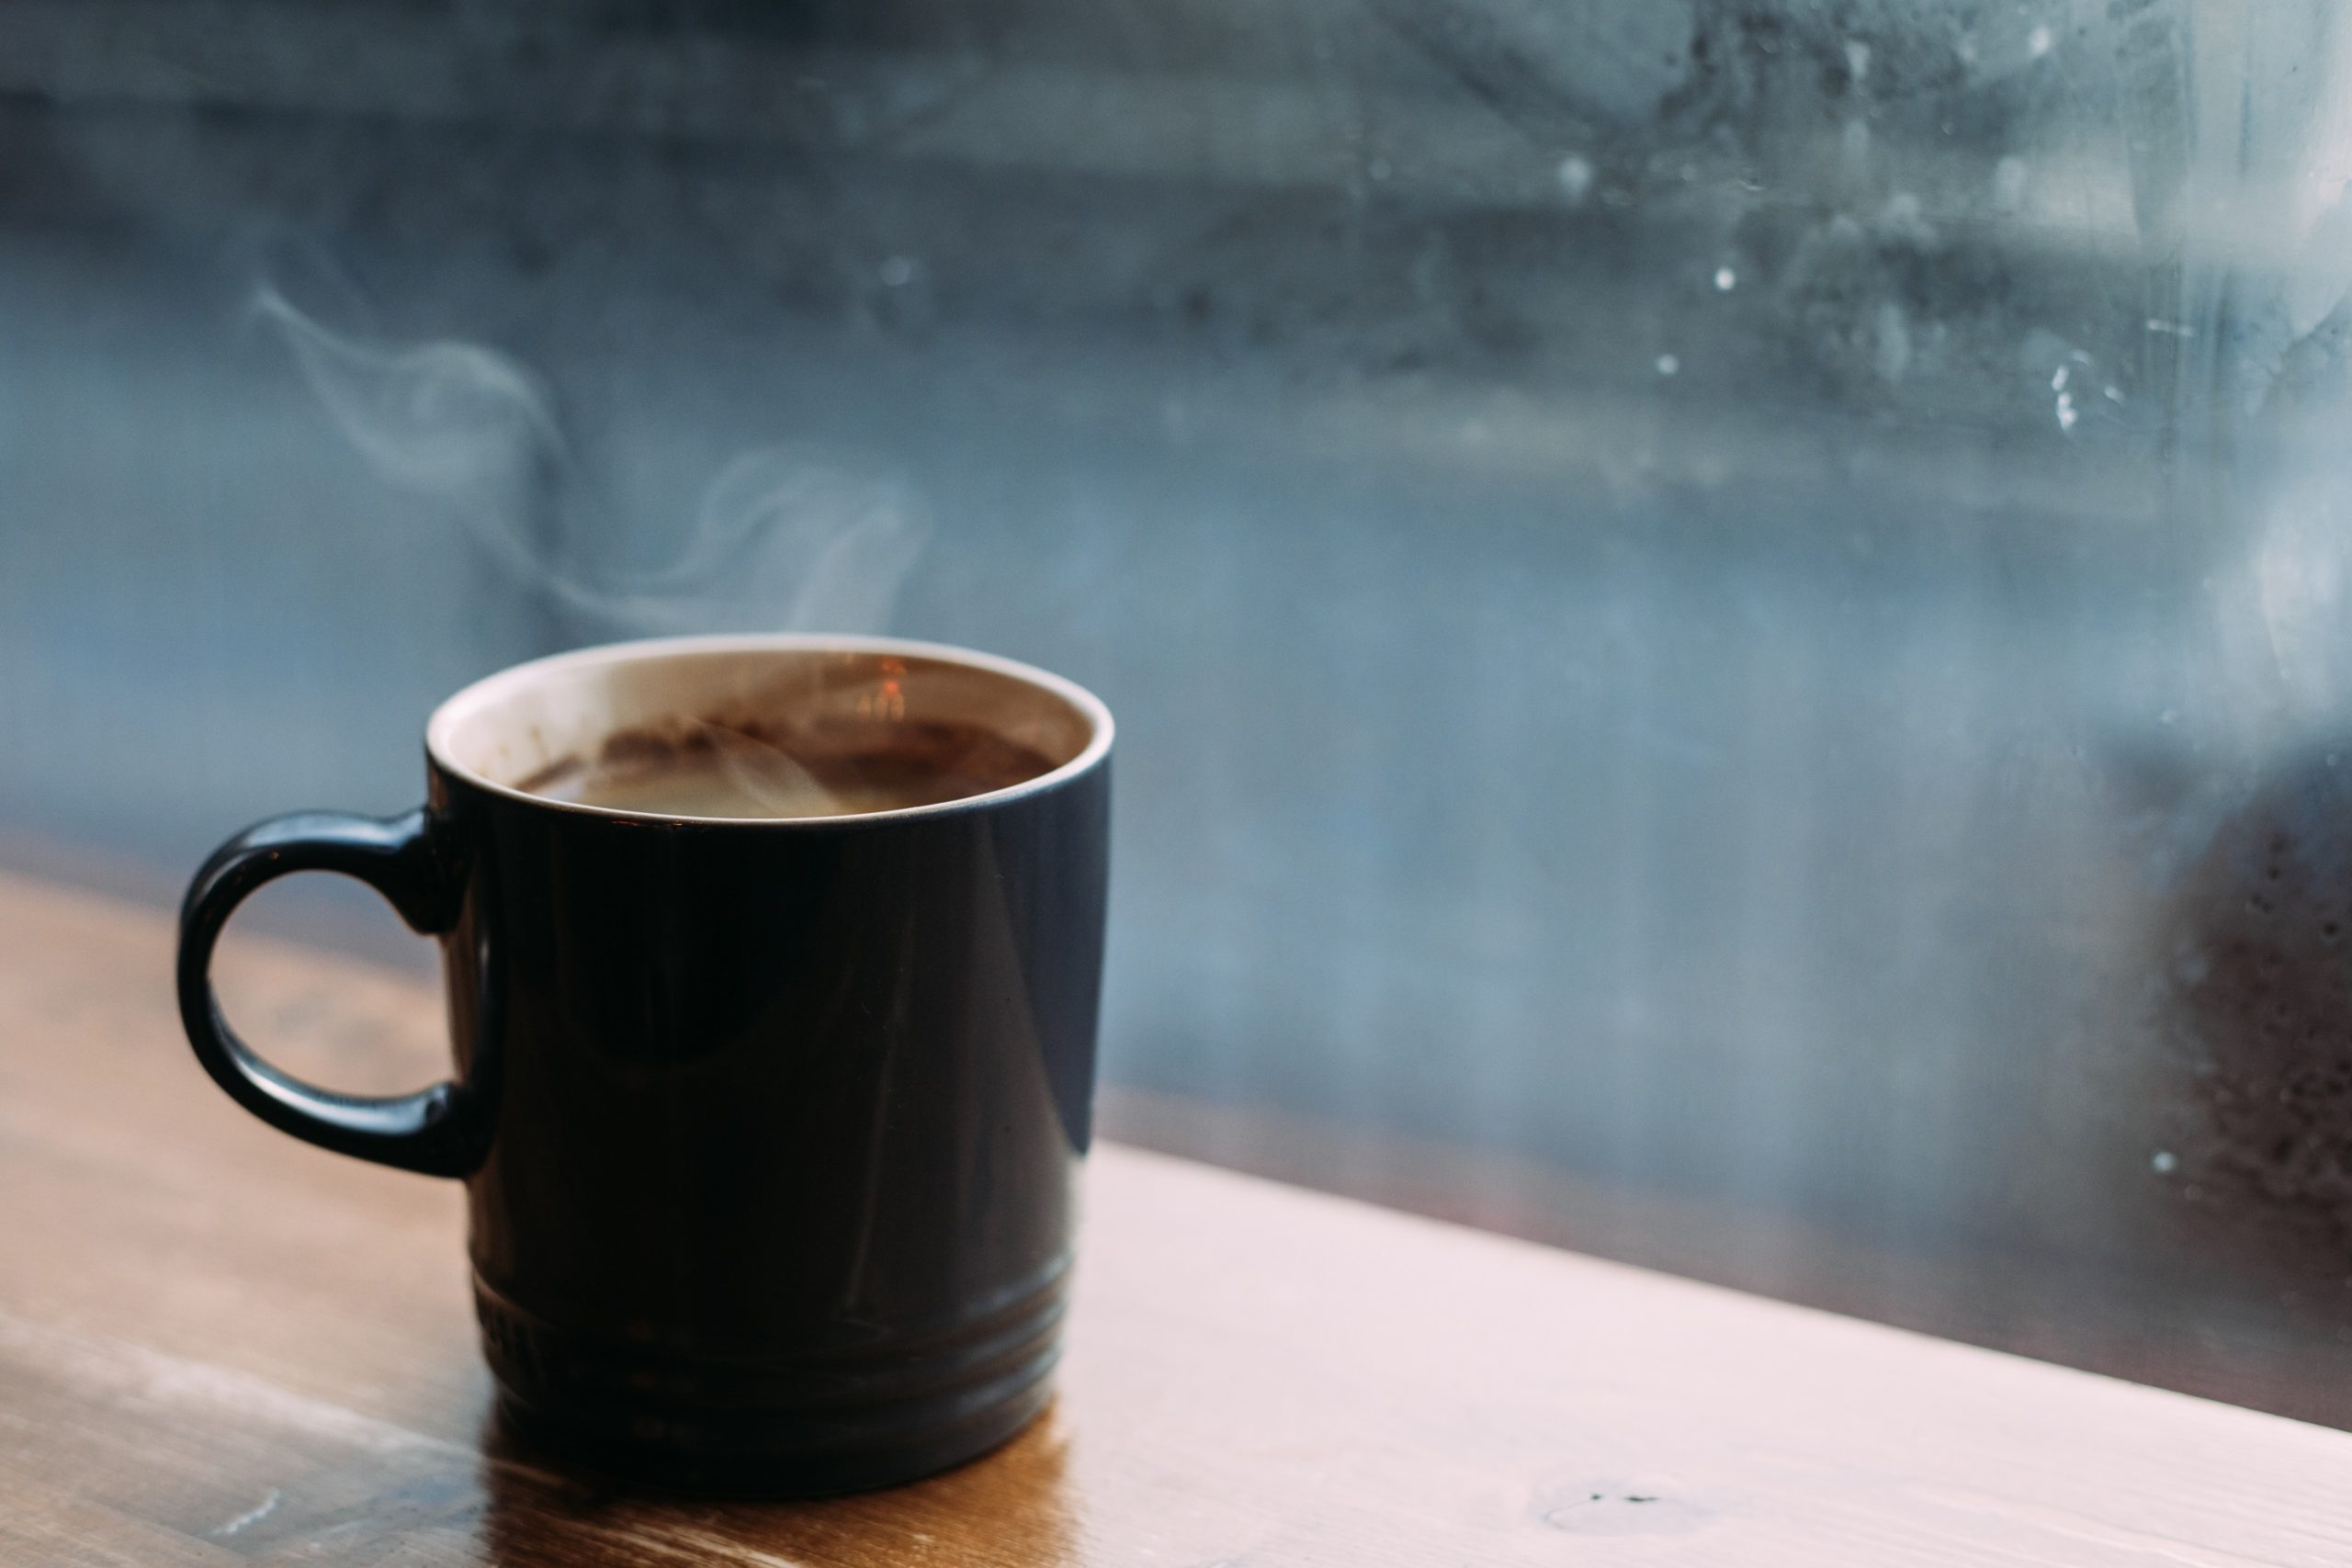 Melegítsd elő a bögrét: a kávé melegen az igazán jó, és meglepően sokat hűl már akkor is, amikor az ital a szobahőmérsékletű bögrébe, csészébe érkezik. Némi melegvíz javít ezen a helyzeten